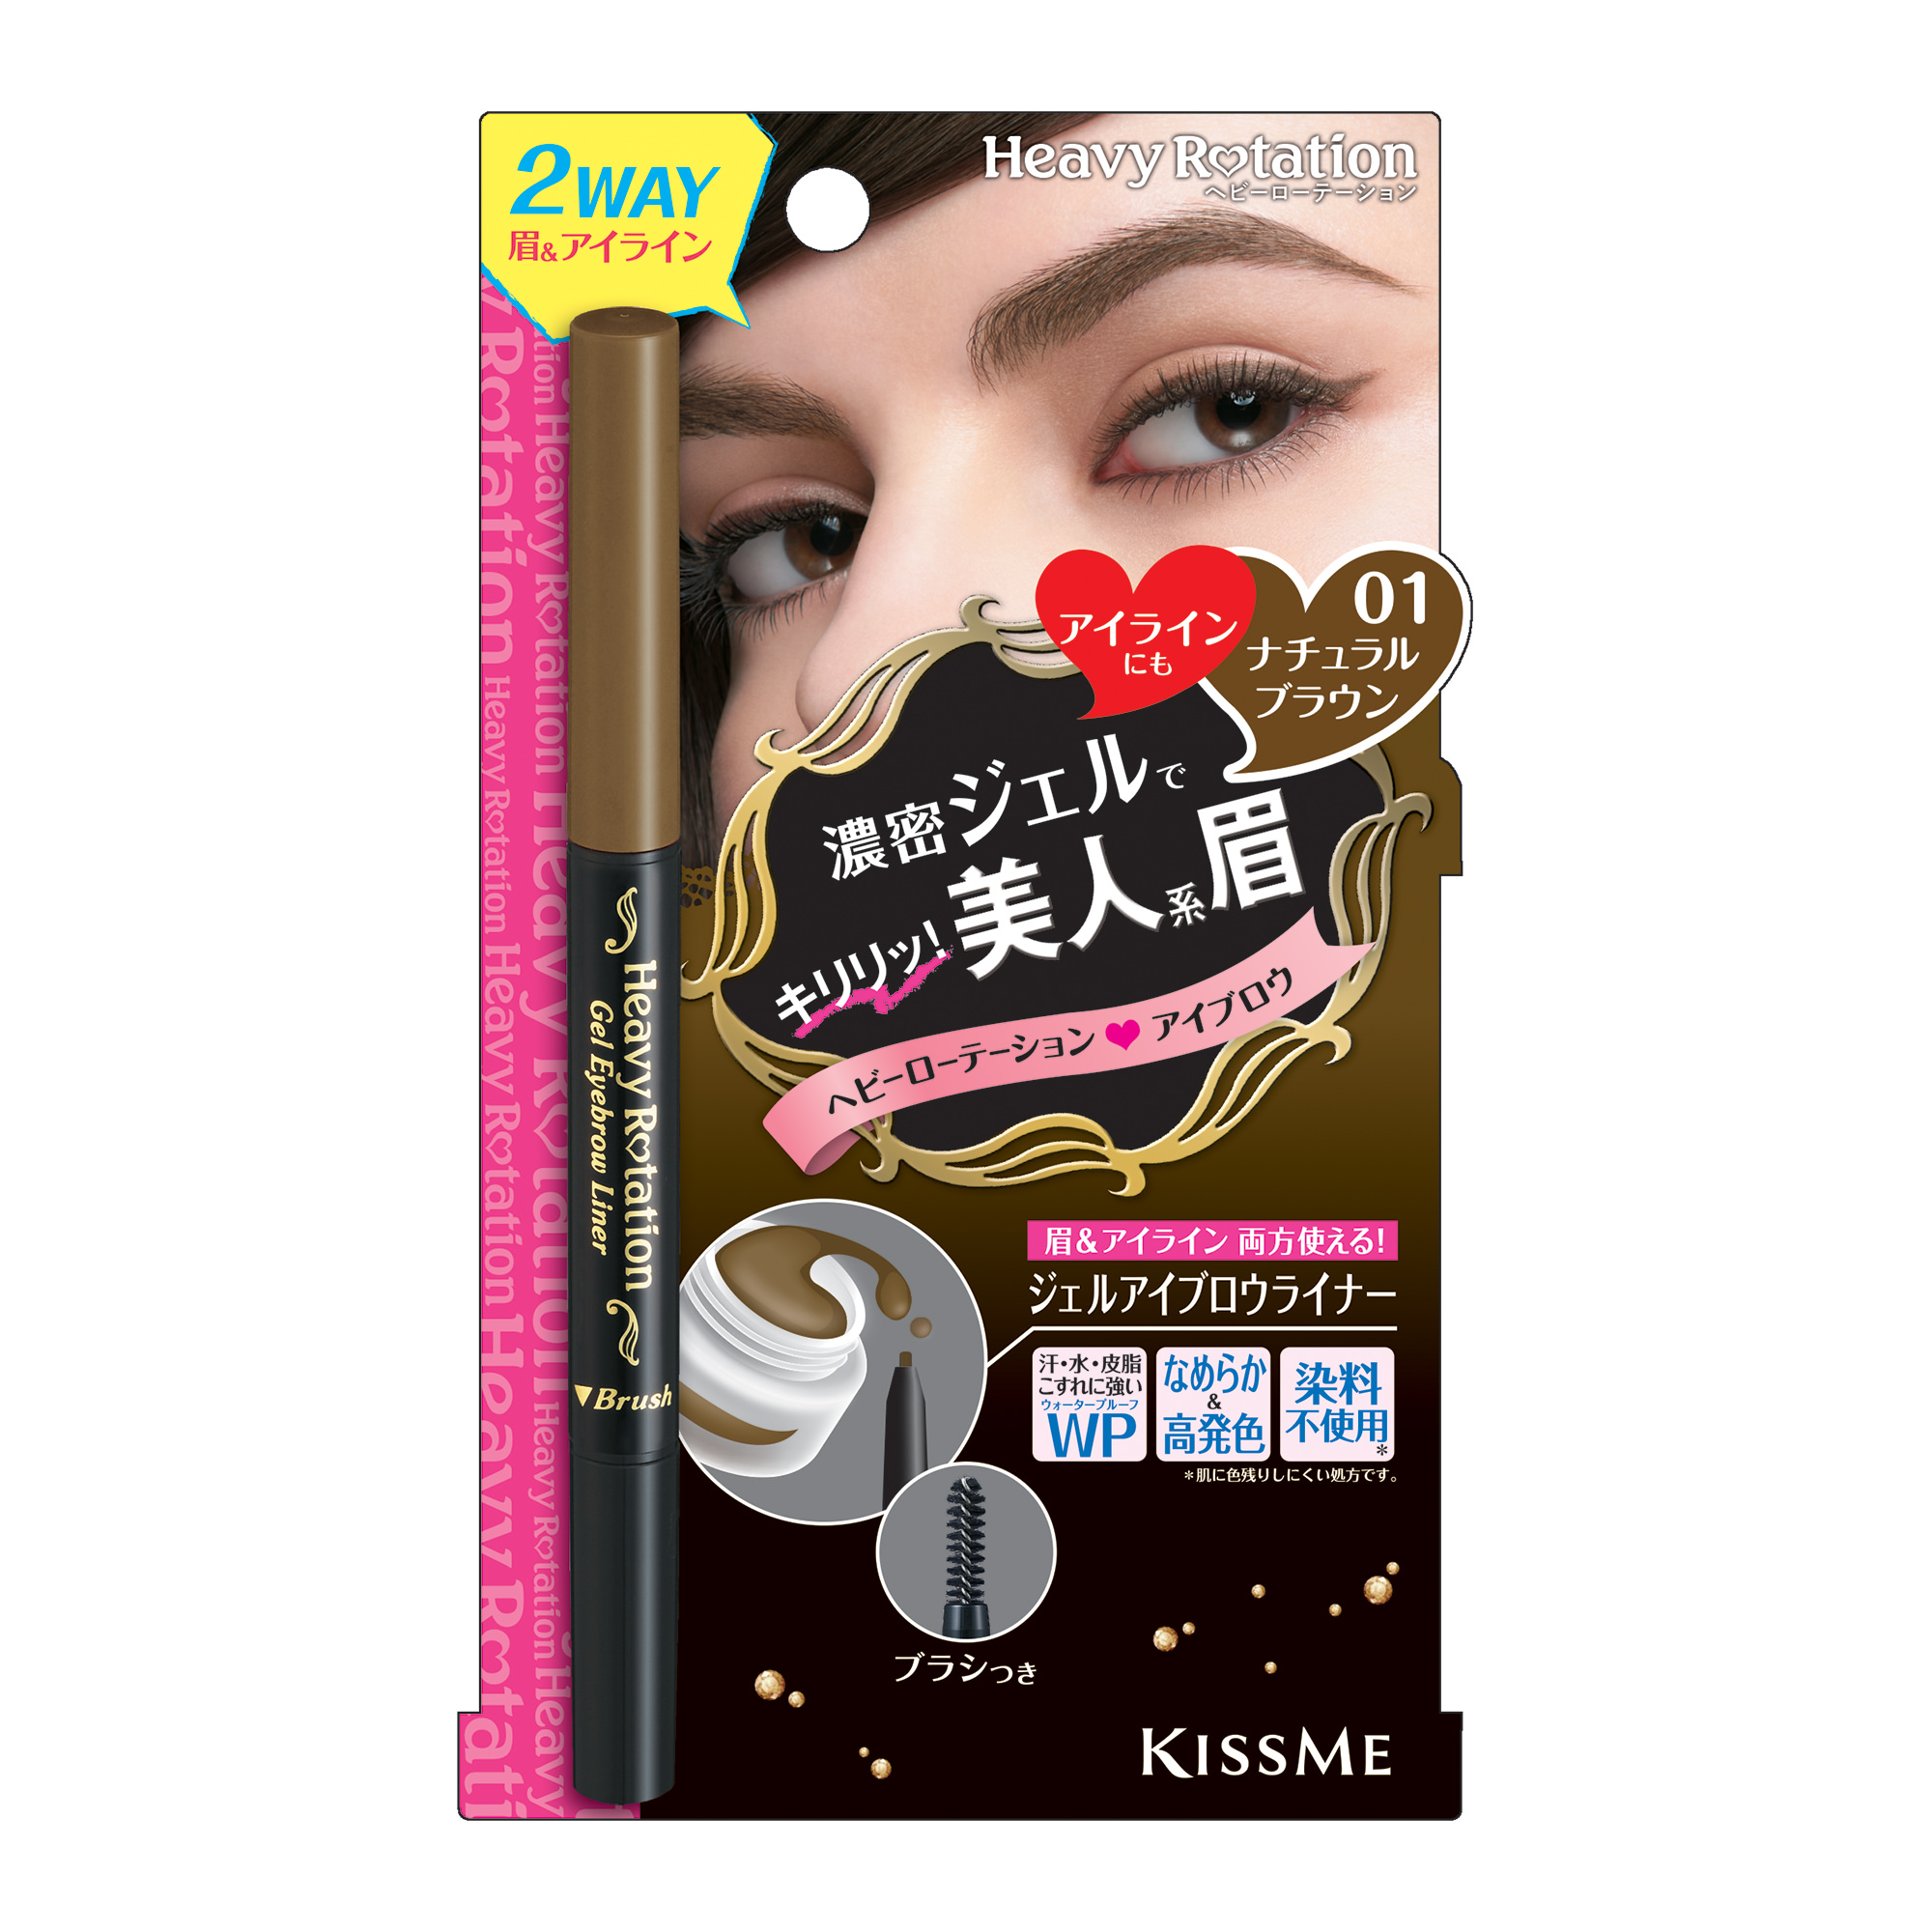 日本KissMe | 两用凌胶旋转 眉笔 | 自然棕色 GEL Eyebrow NATURAL BROWN 1